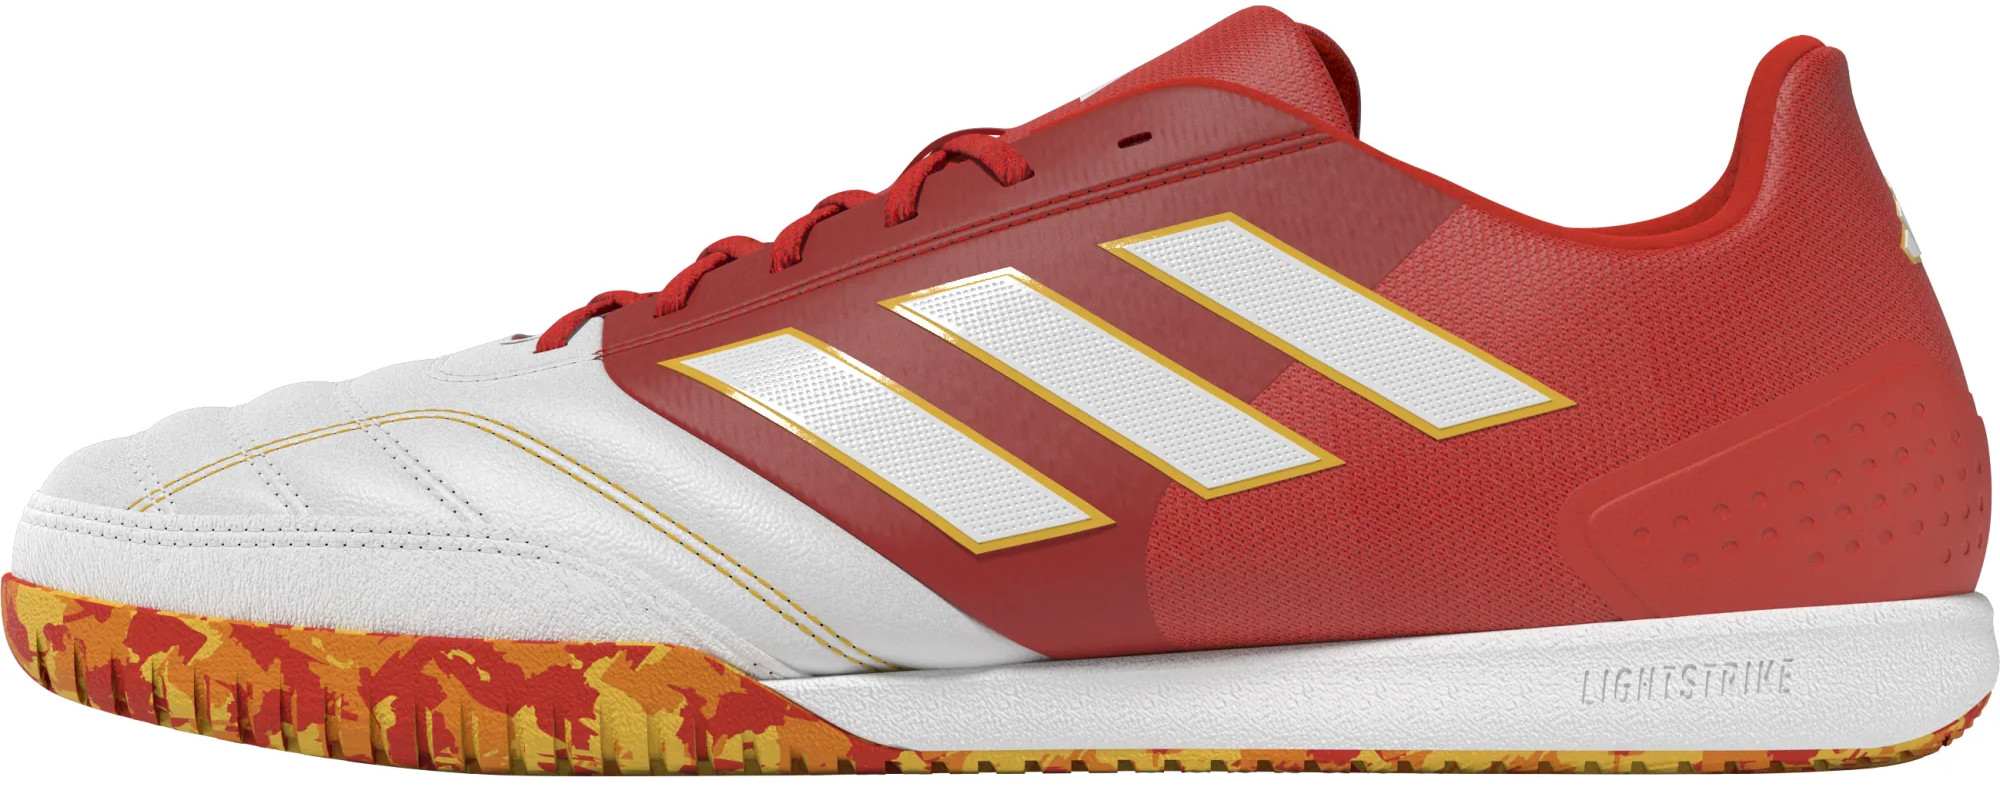 Pantofi fotbal de sală adidas TOP SALA COMPETITION